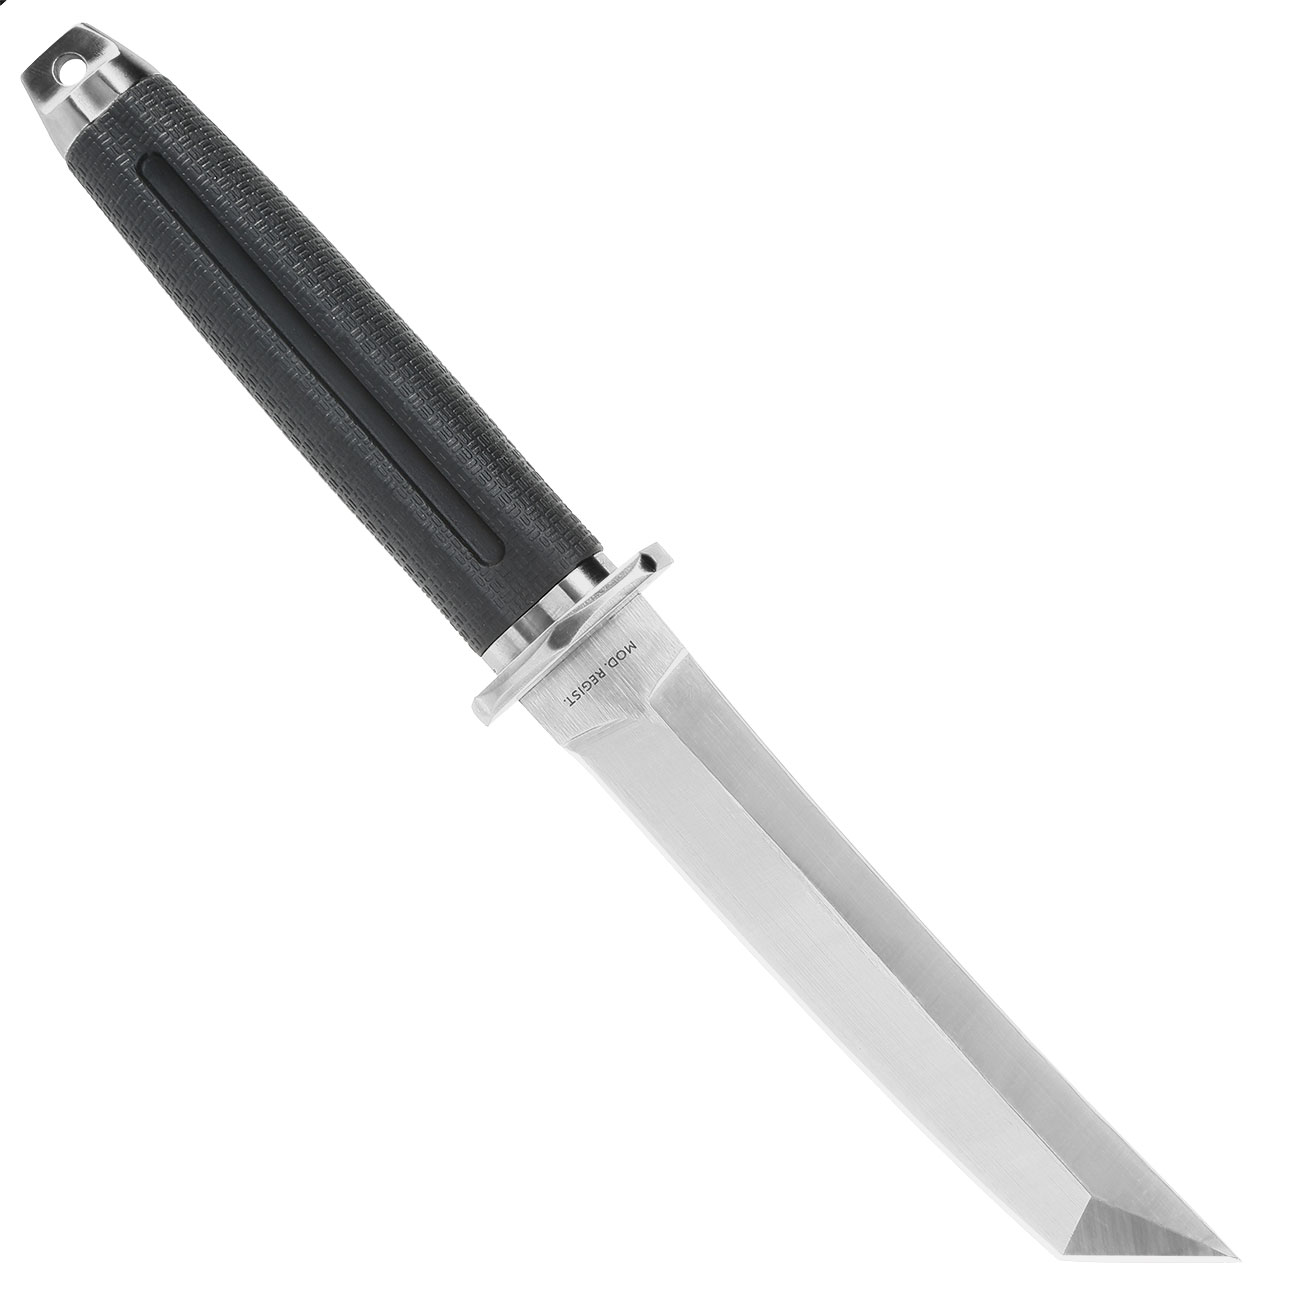 Tokisu Taktisches Messer Musashii Tantoklinge silber/schwarz inkl. Gürtelscheide und Box Bild 1